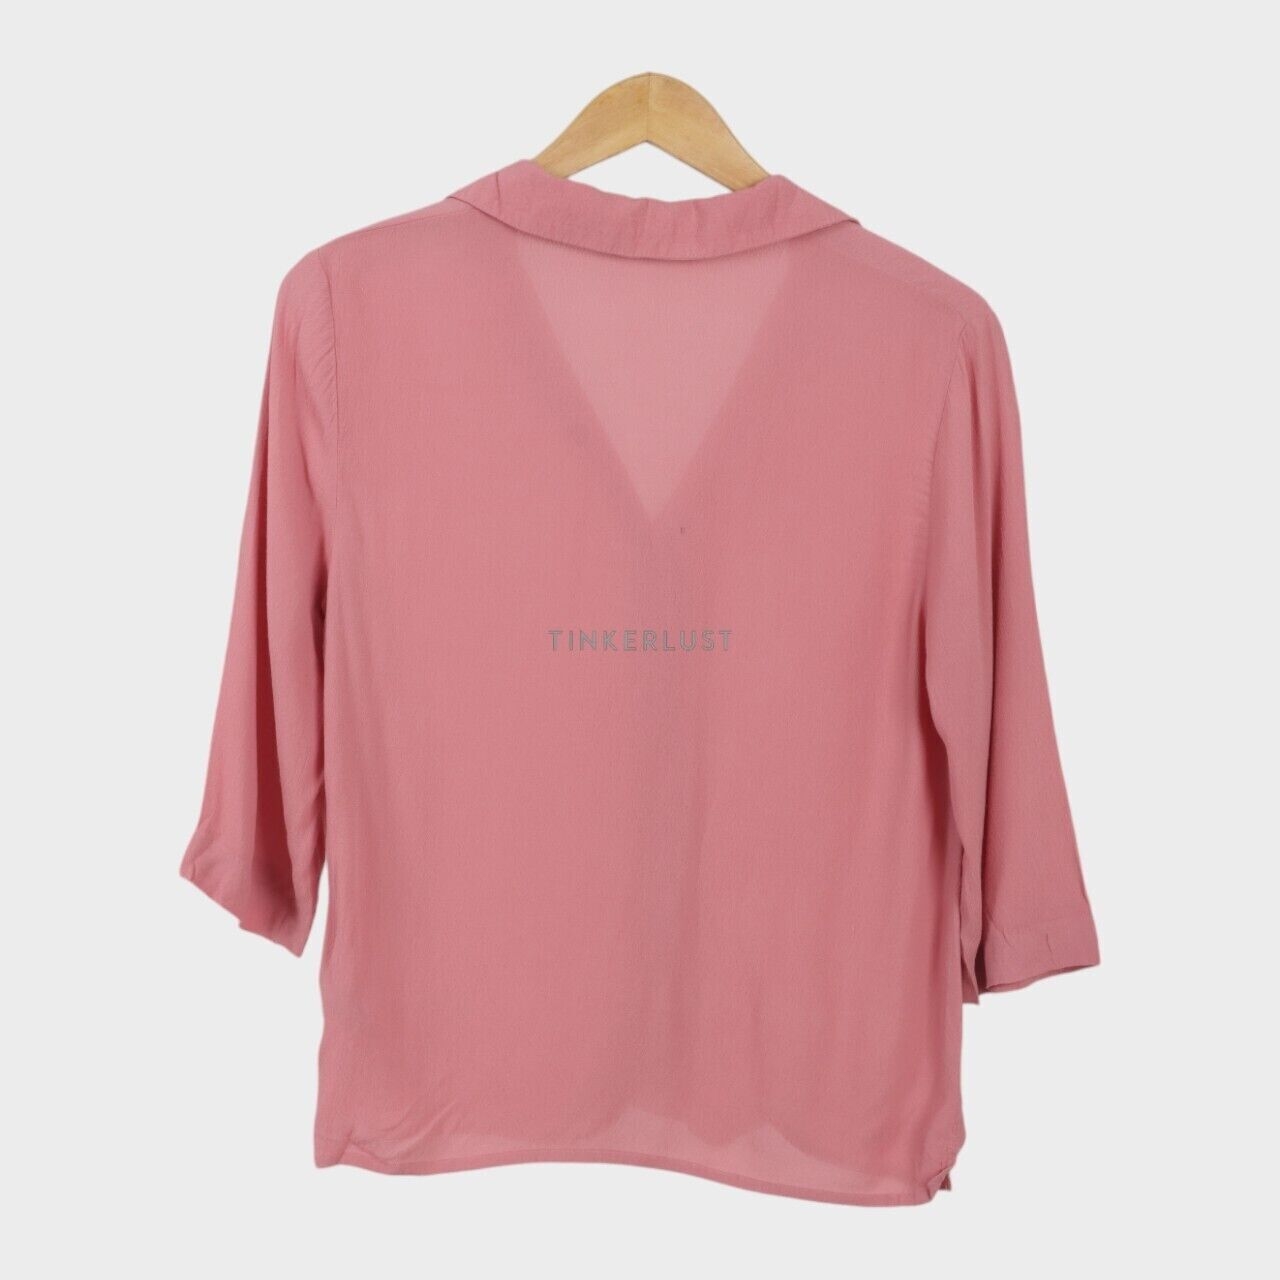 Marks & Spencer Pink Shirt